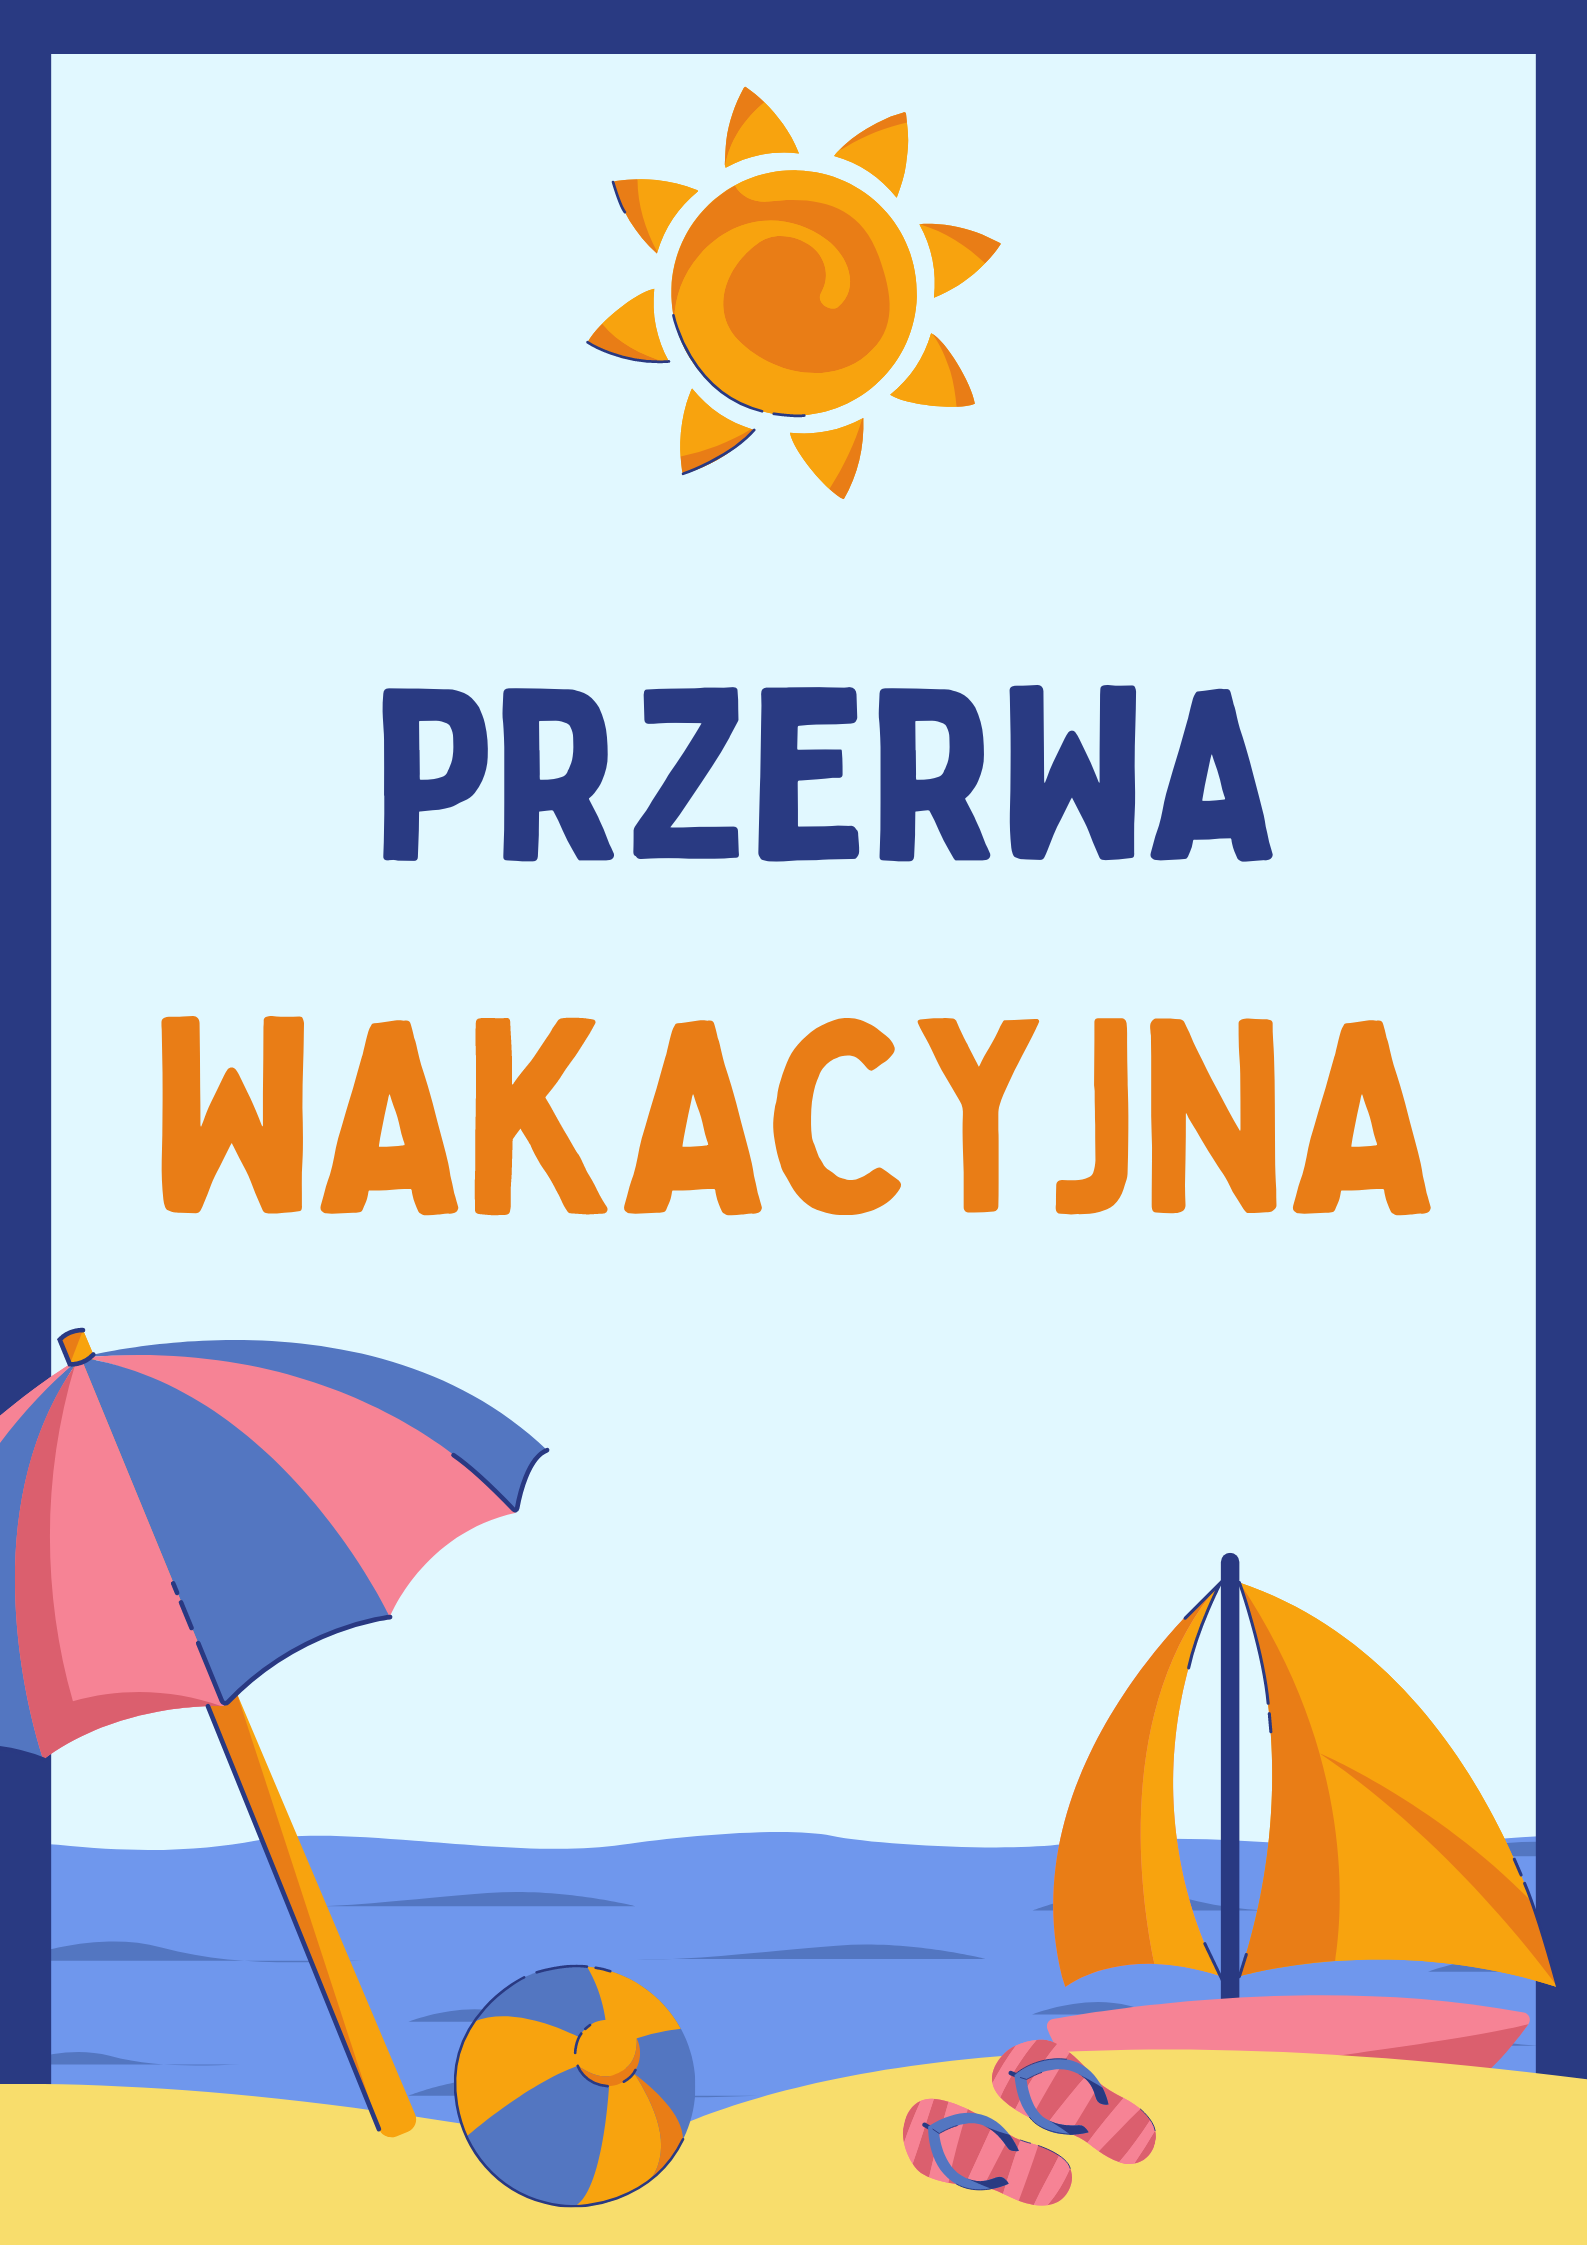 Kolorowy plakat z napisem "Przerwa wakacyjna".